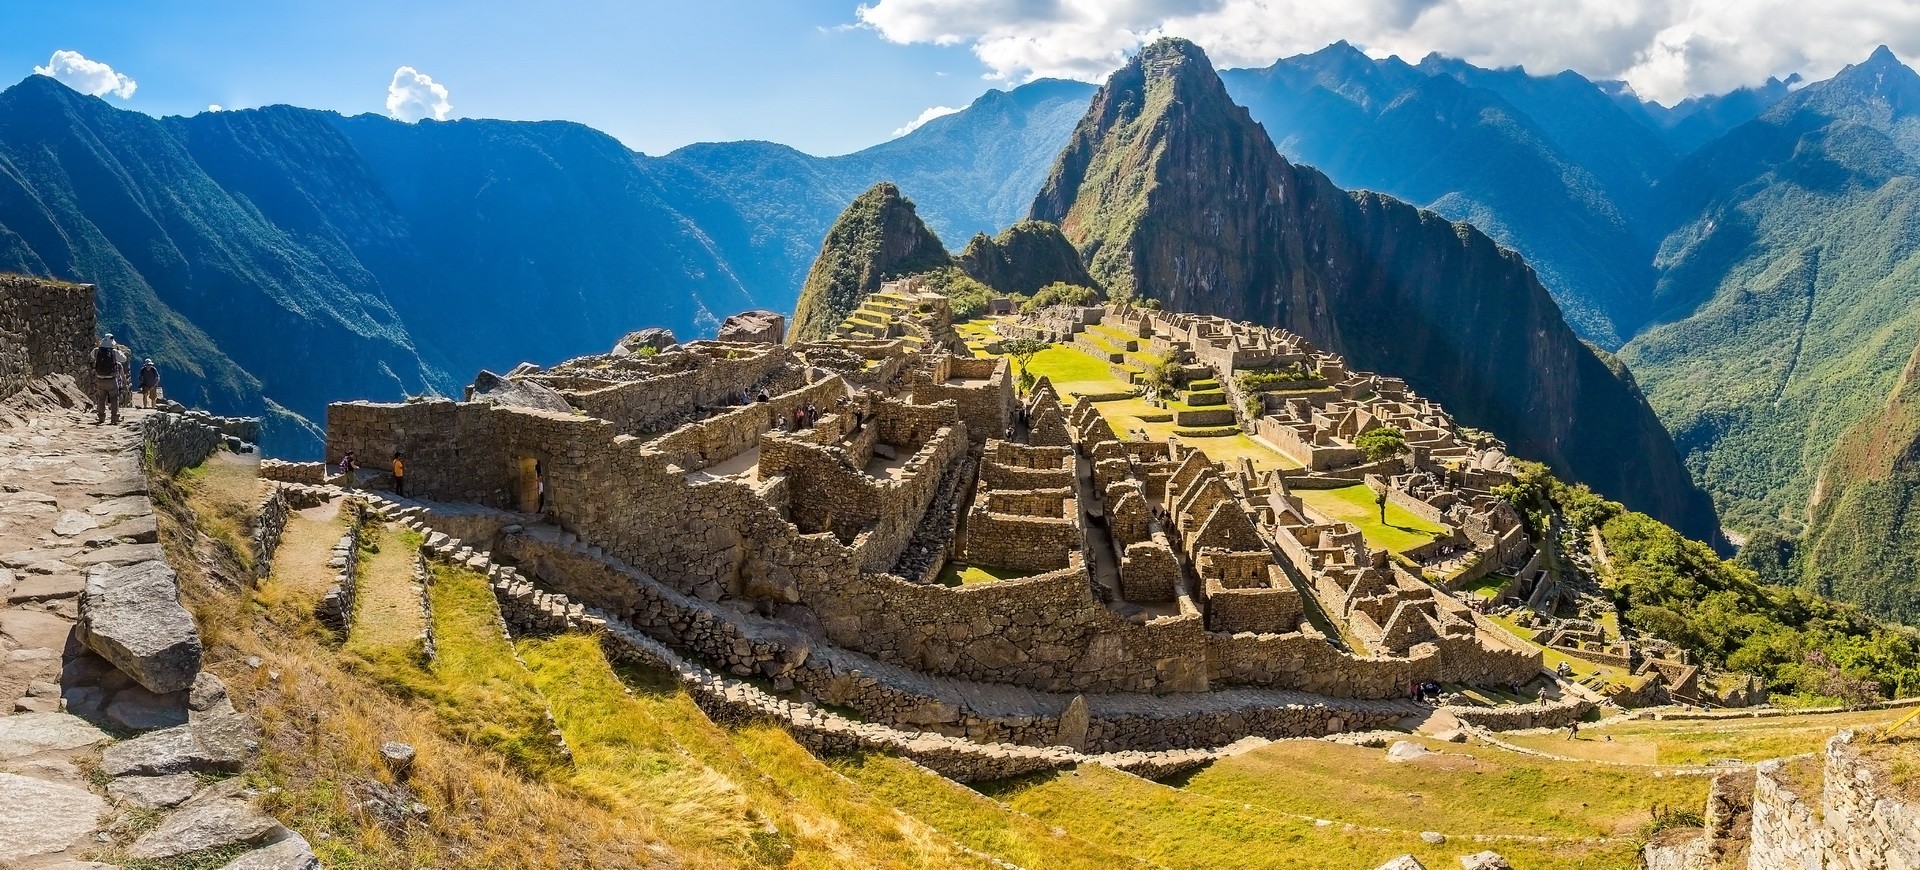 Pérou Machu Picchu cité de la civilisation Inca